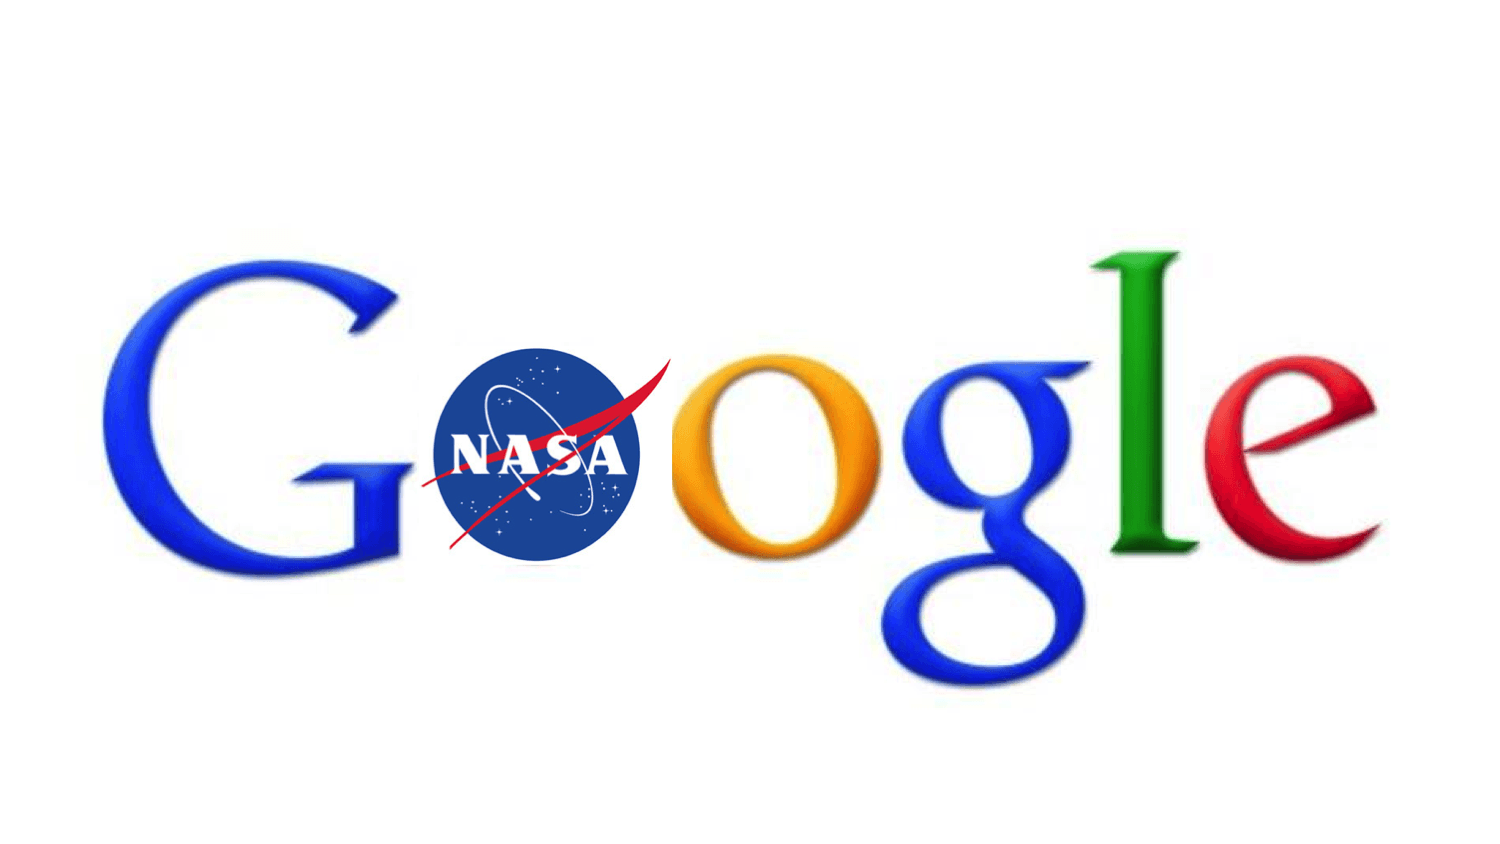 NASA New Logo - Why The New Google-NASA Partnership Marks A New Era In The History ...